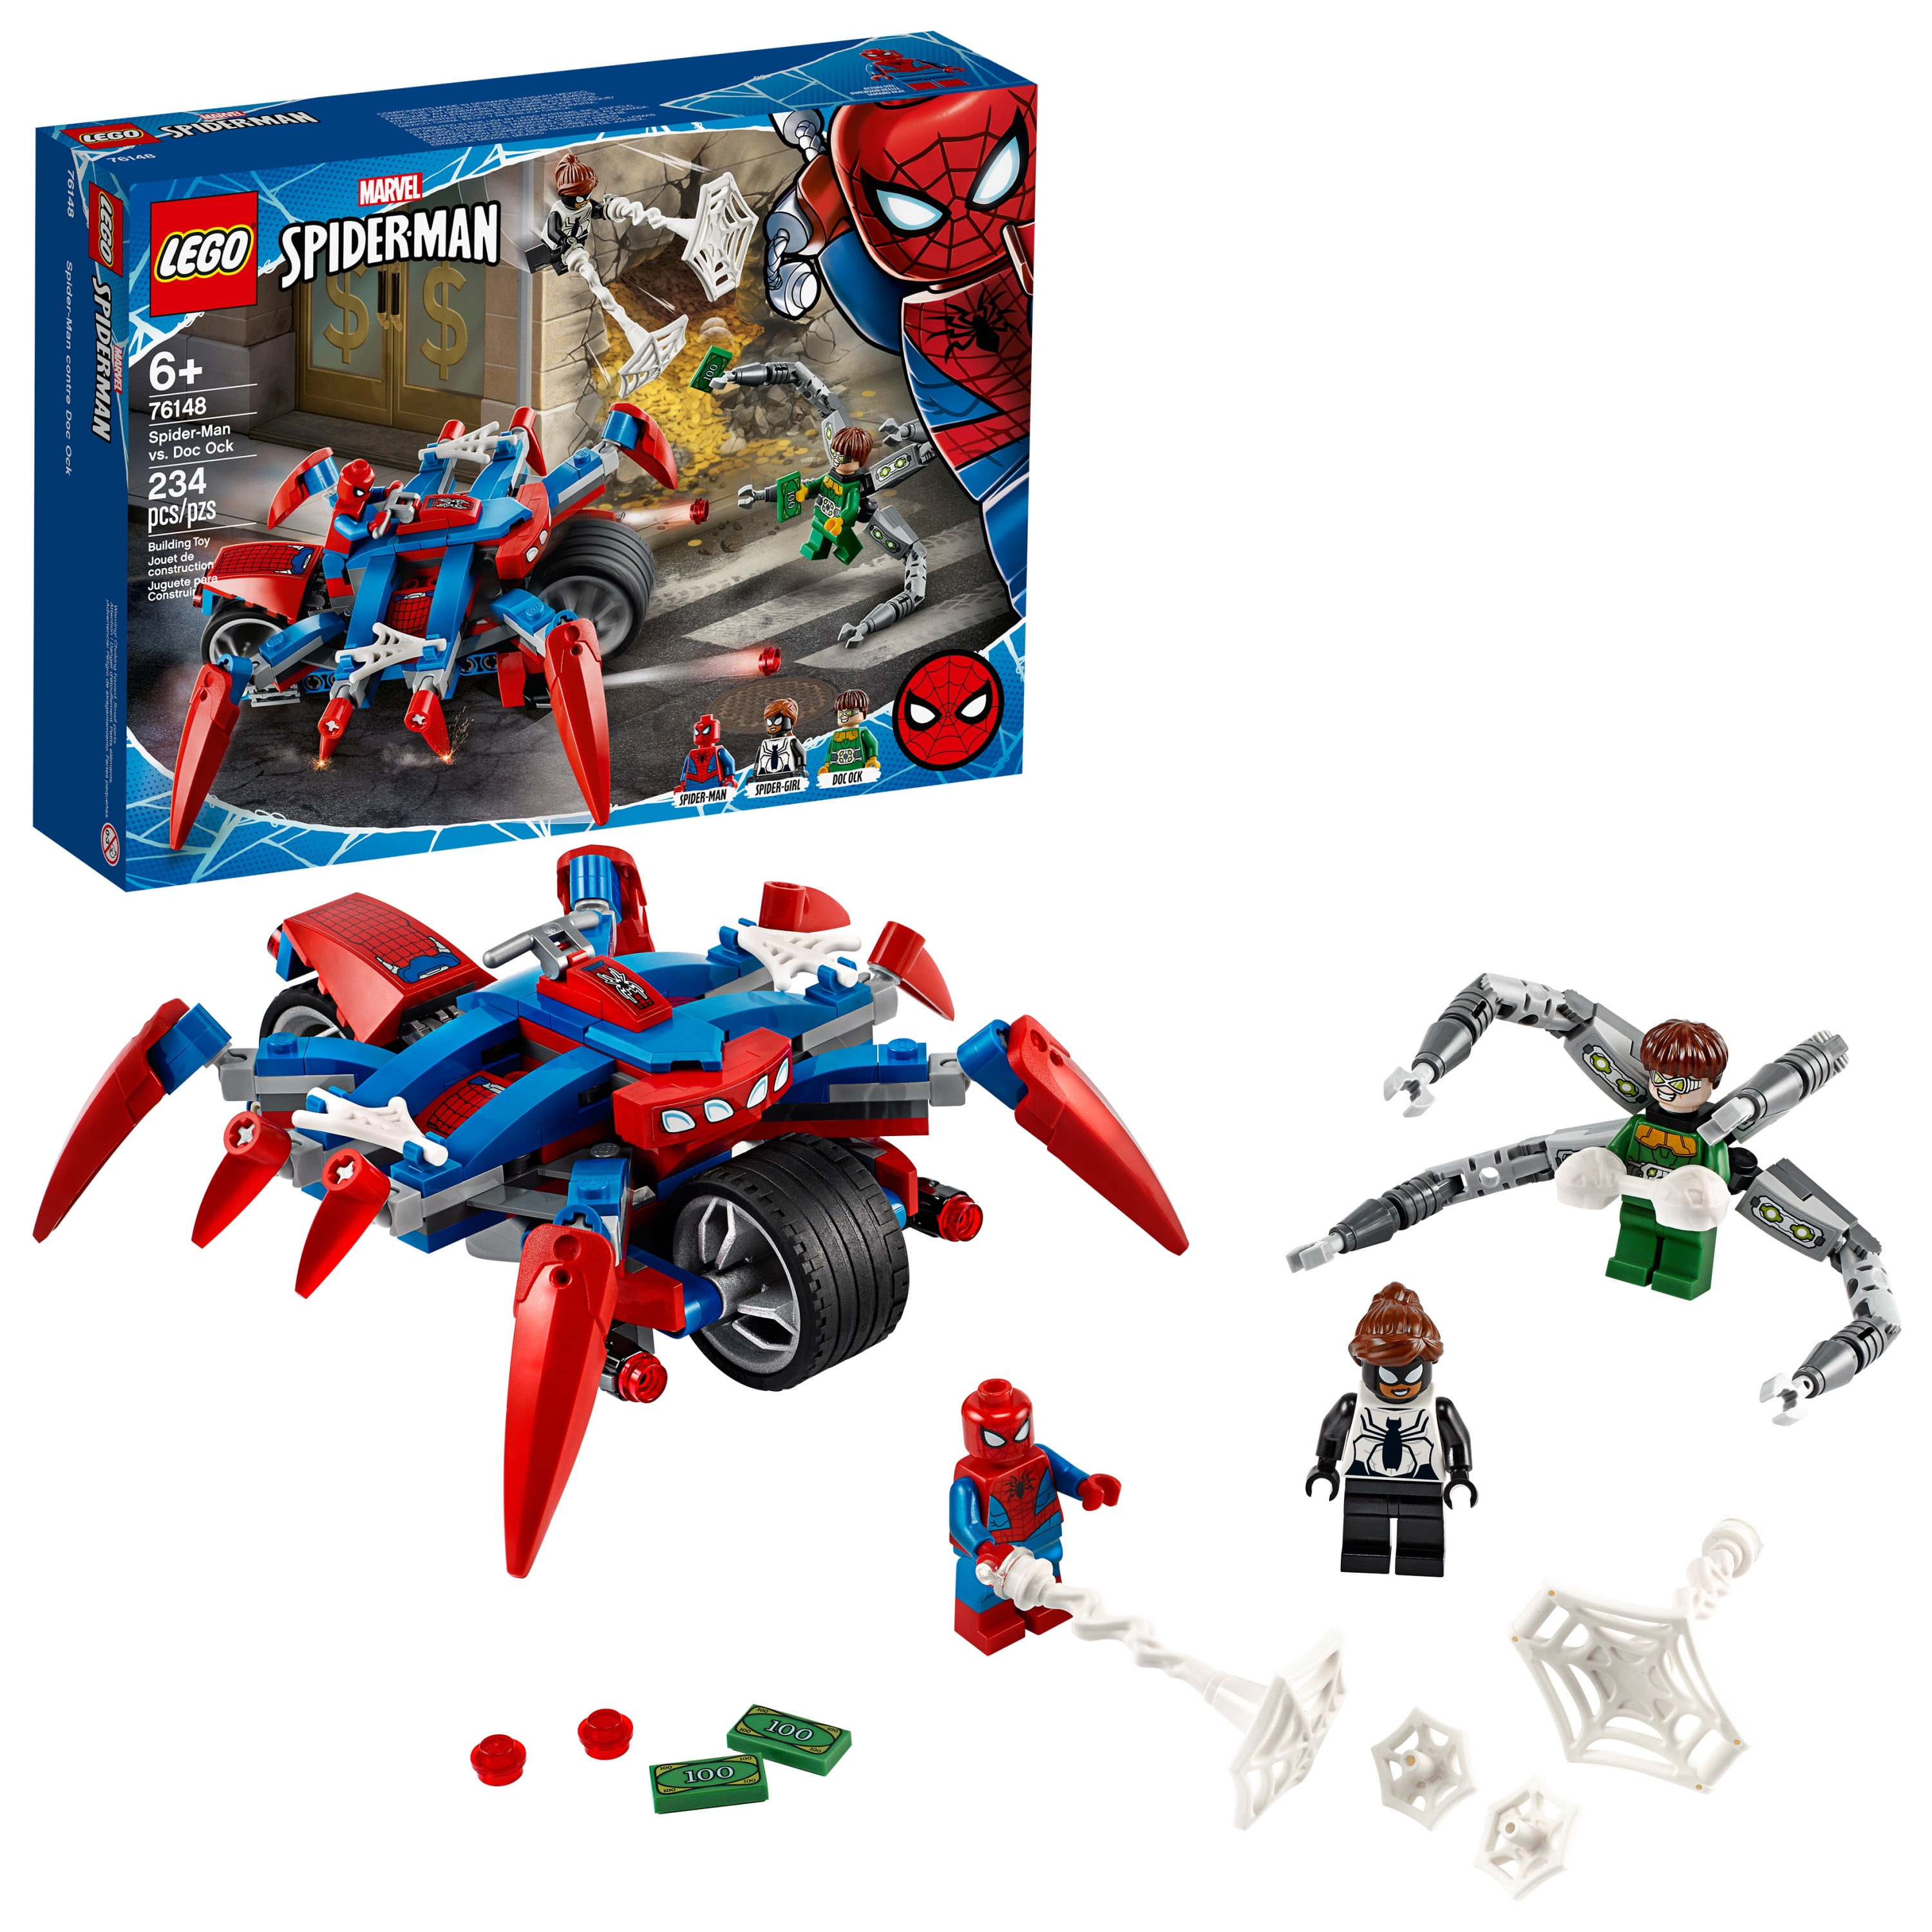 LEGO Marvel Avengers Movie 4 Avengers Truck Take-down 76143 Christmas Gift Toy